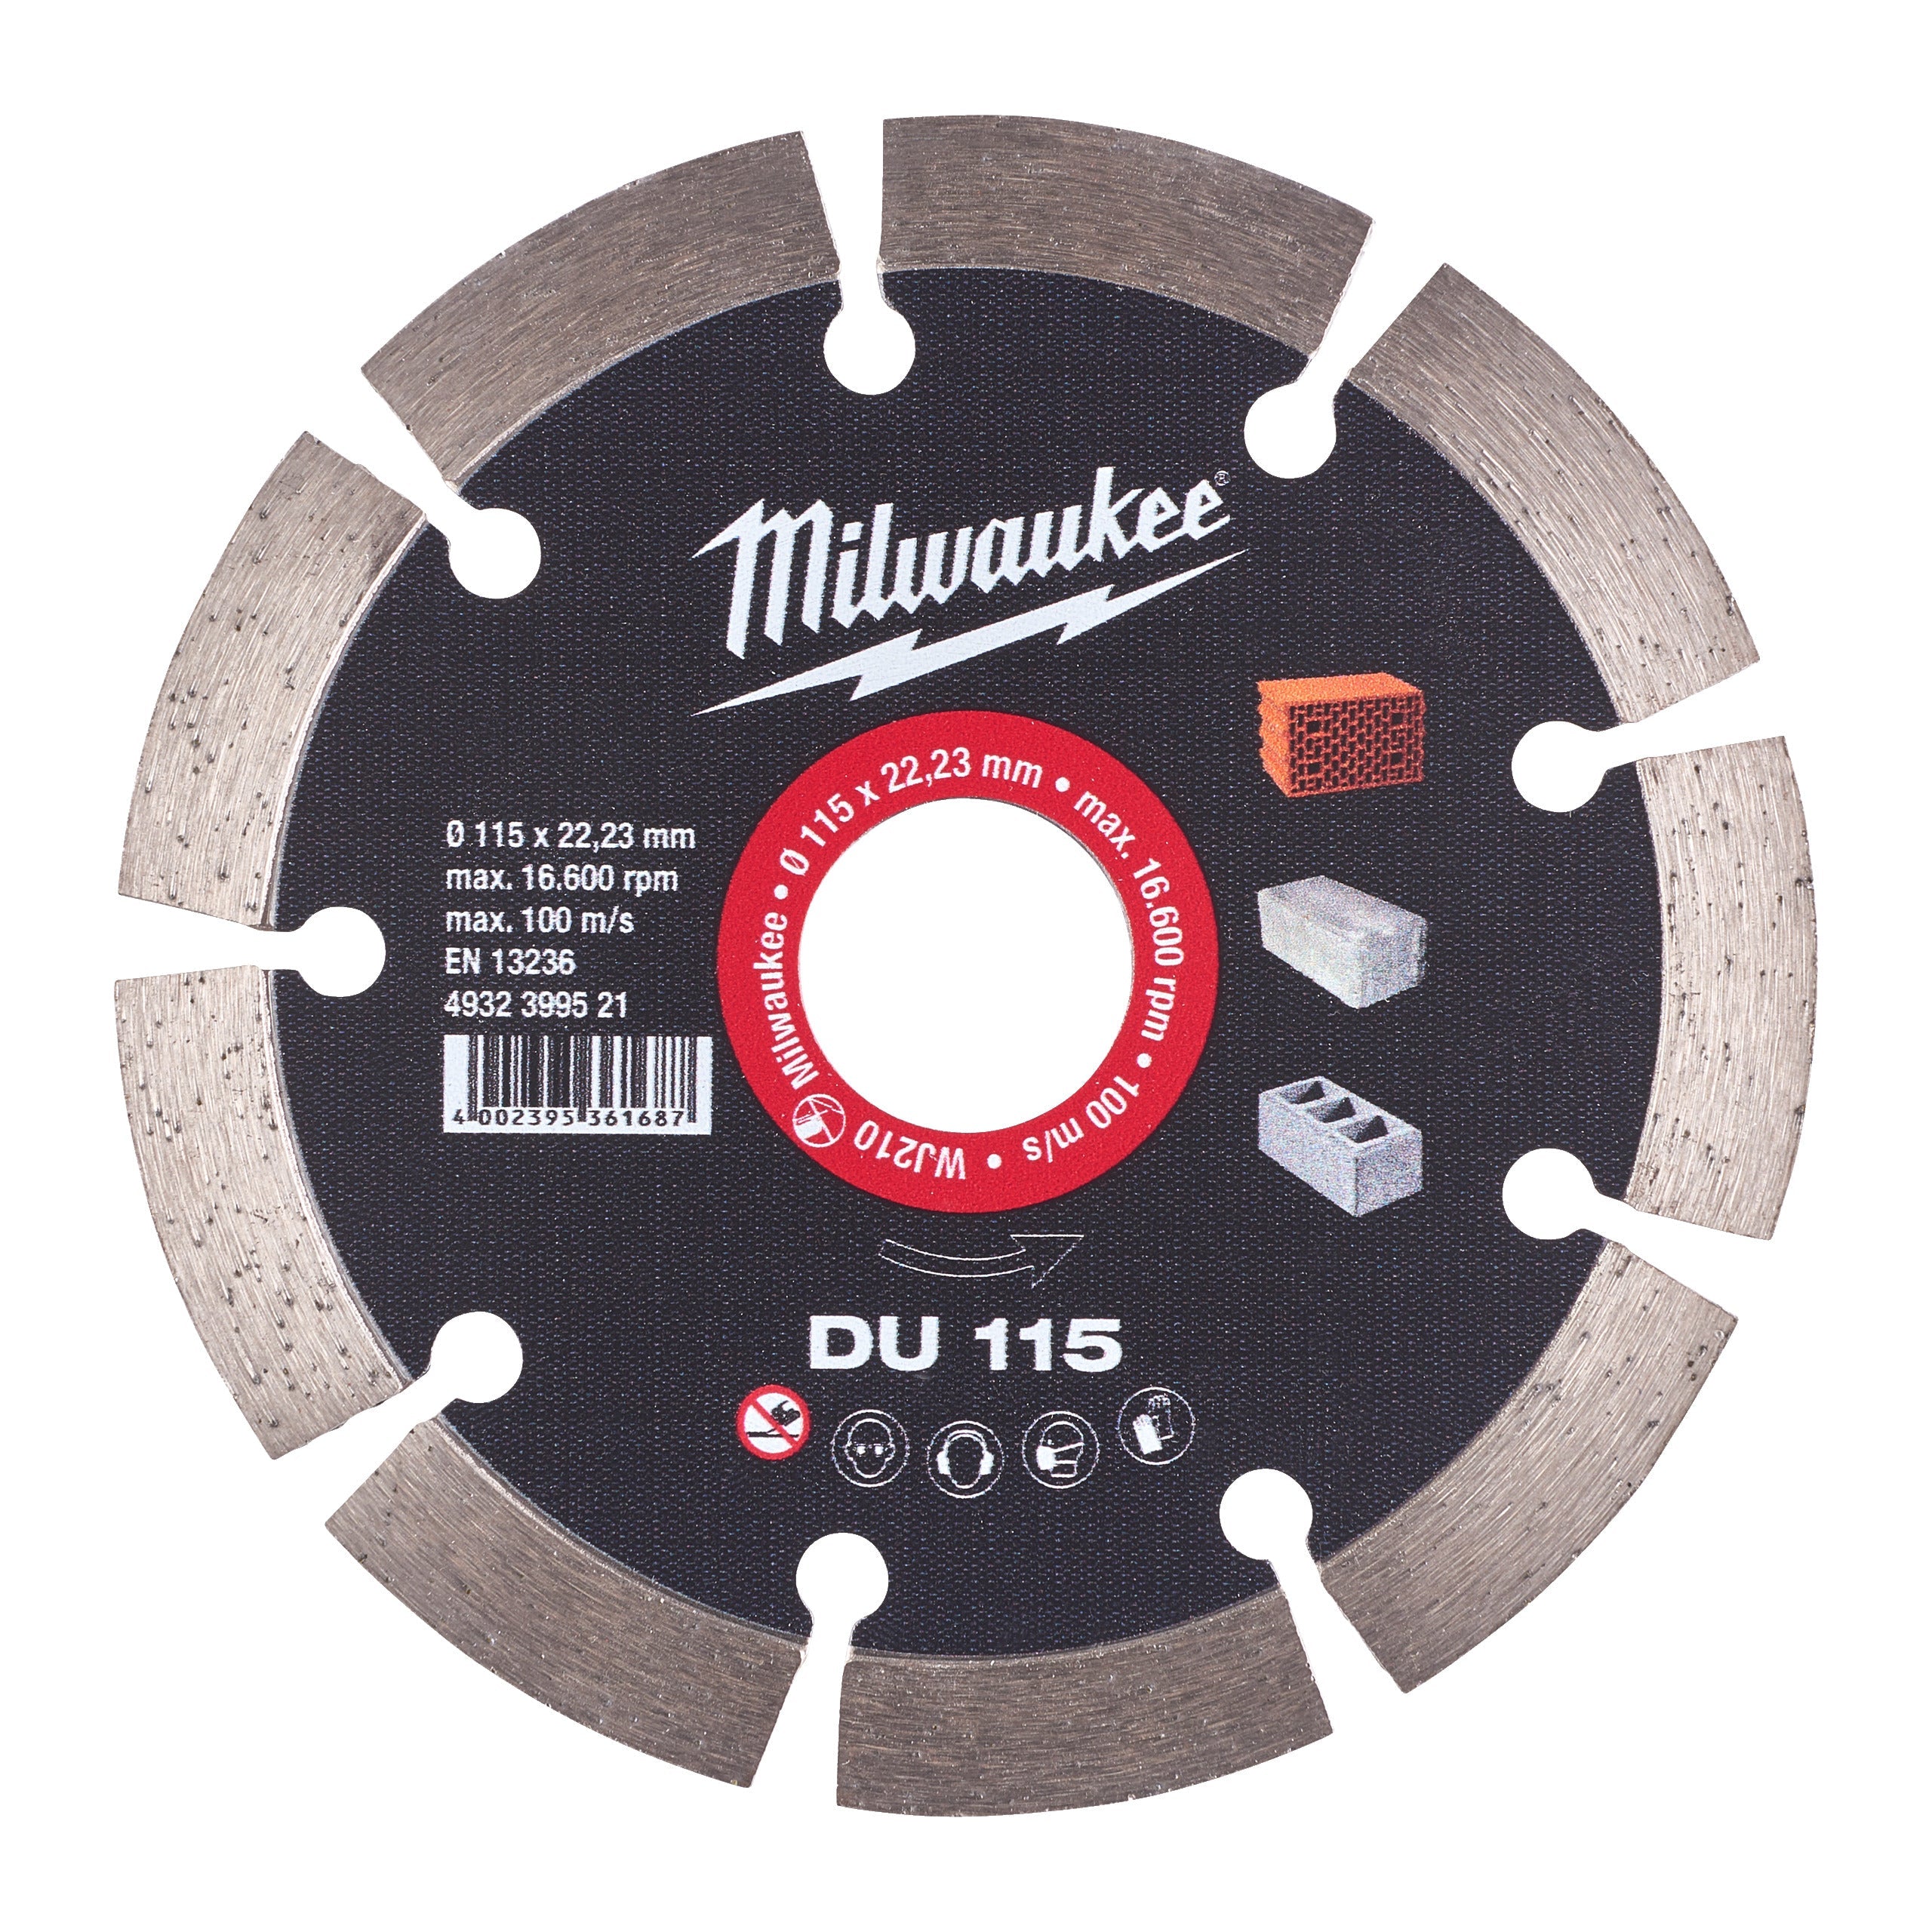 Disc diamantat DU 115 x 22,2 mm, Milwaukee cod 4932399521